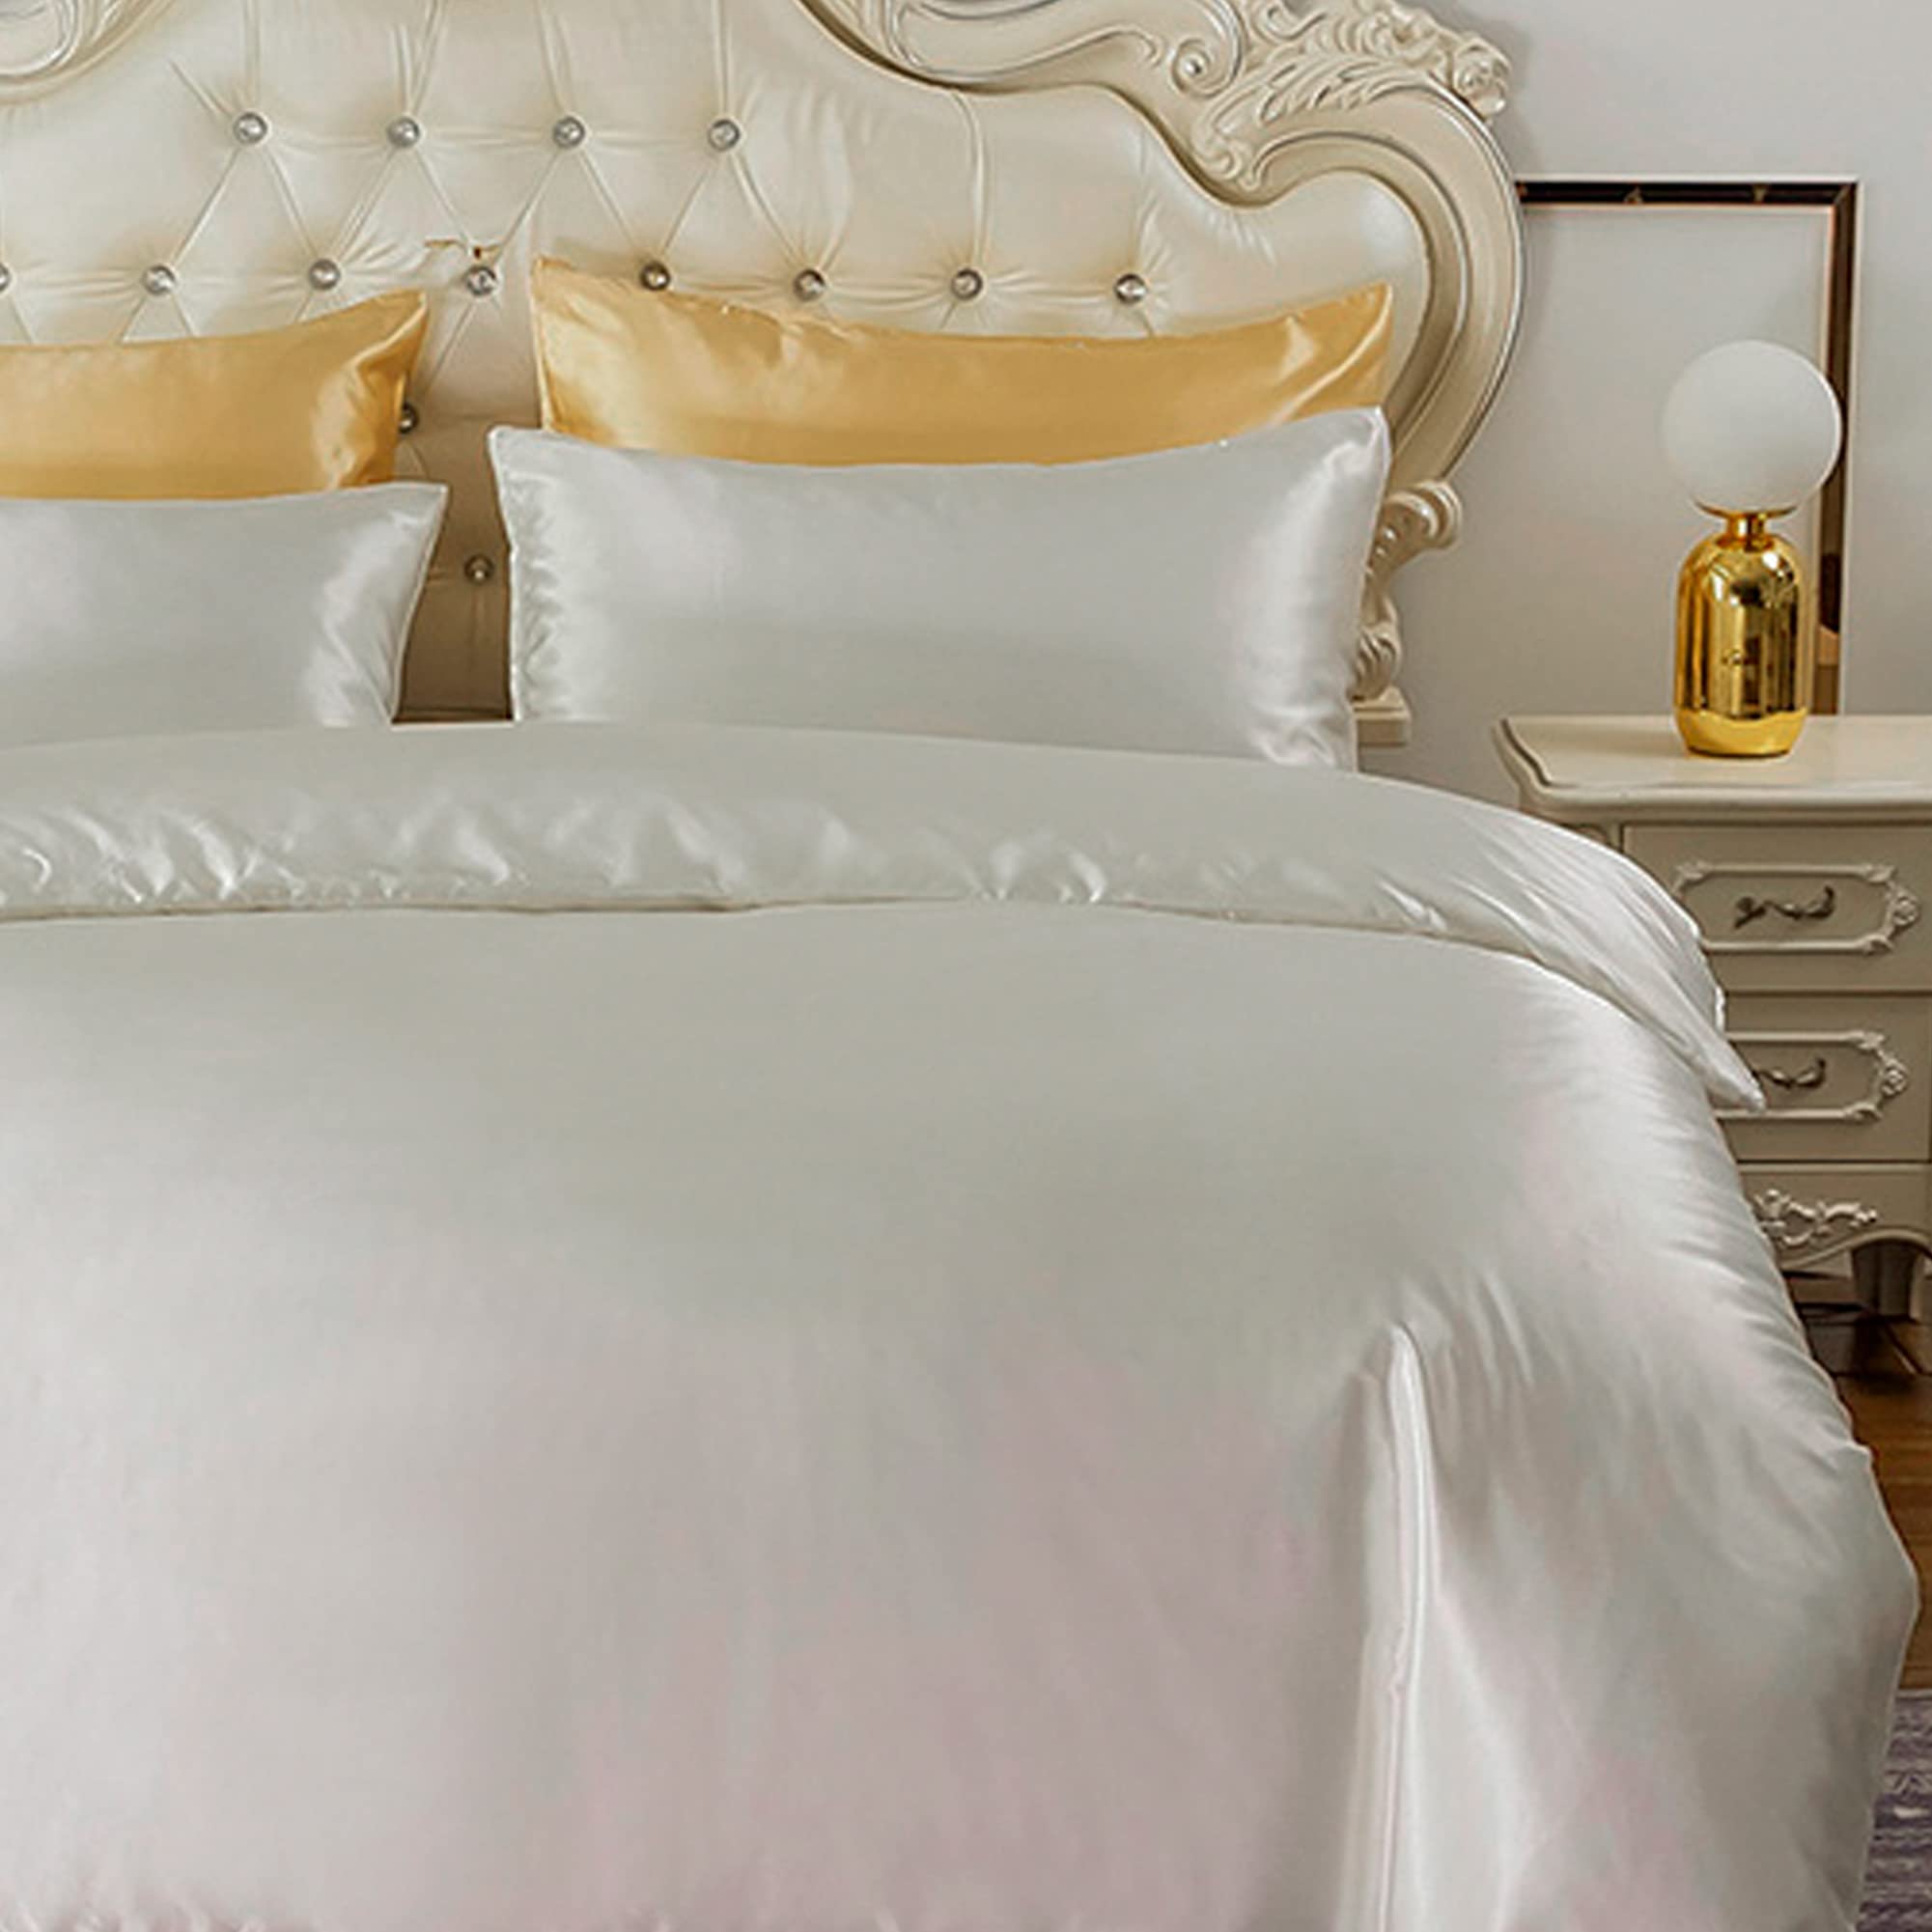 HYSENM Satin Bettwäsche 135 x 200 cm Seide Luxus Bettbezug Set Microfaser Bettbezug+ 1 Kissenhülle 50 x 70 cm einfarbig glatt bequem elegant, Weiß